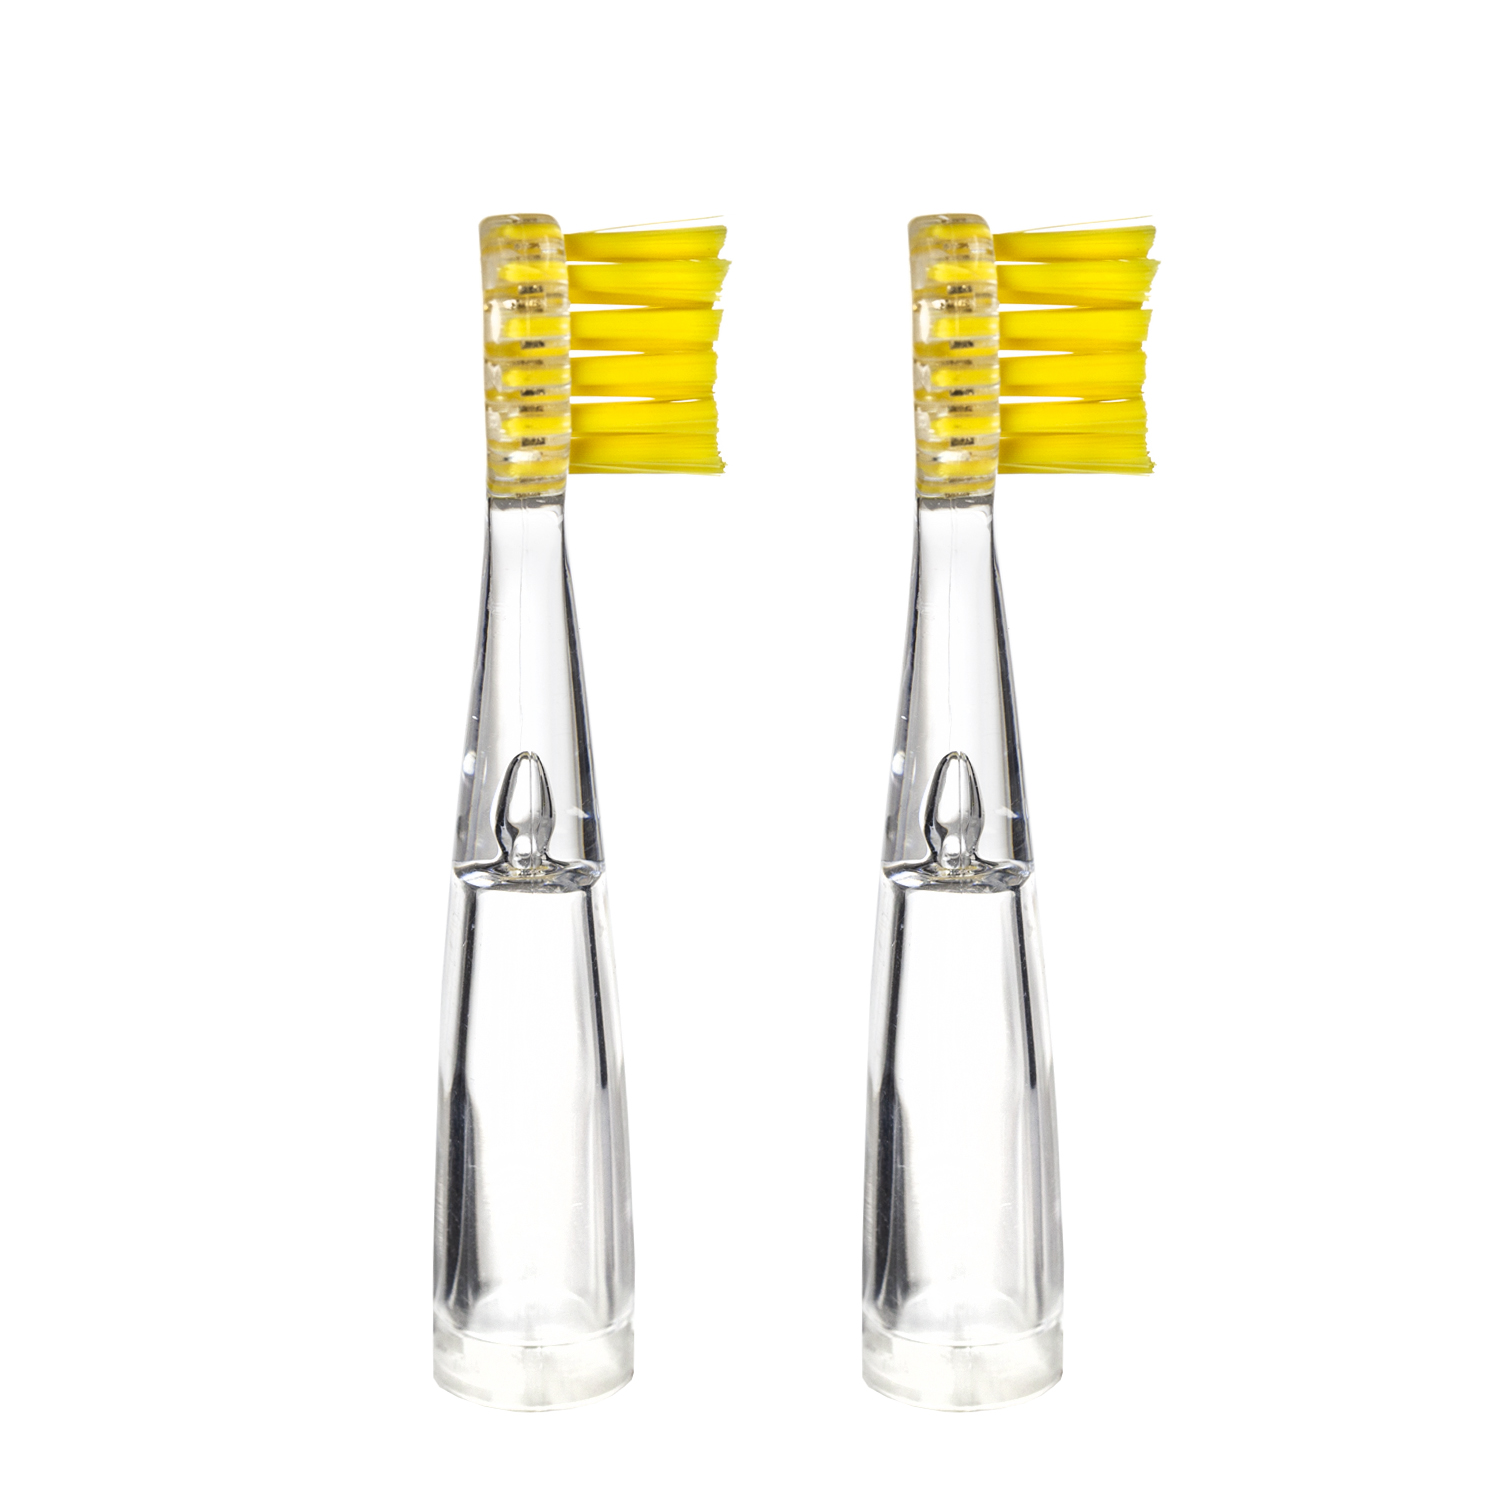 Насадка для детской электрической зубной щетки Revyline RL 025, желтая, 2 шт., 6170